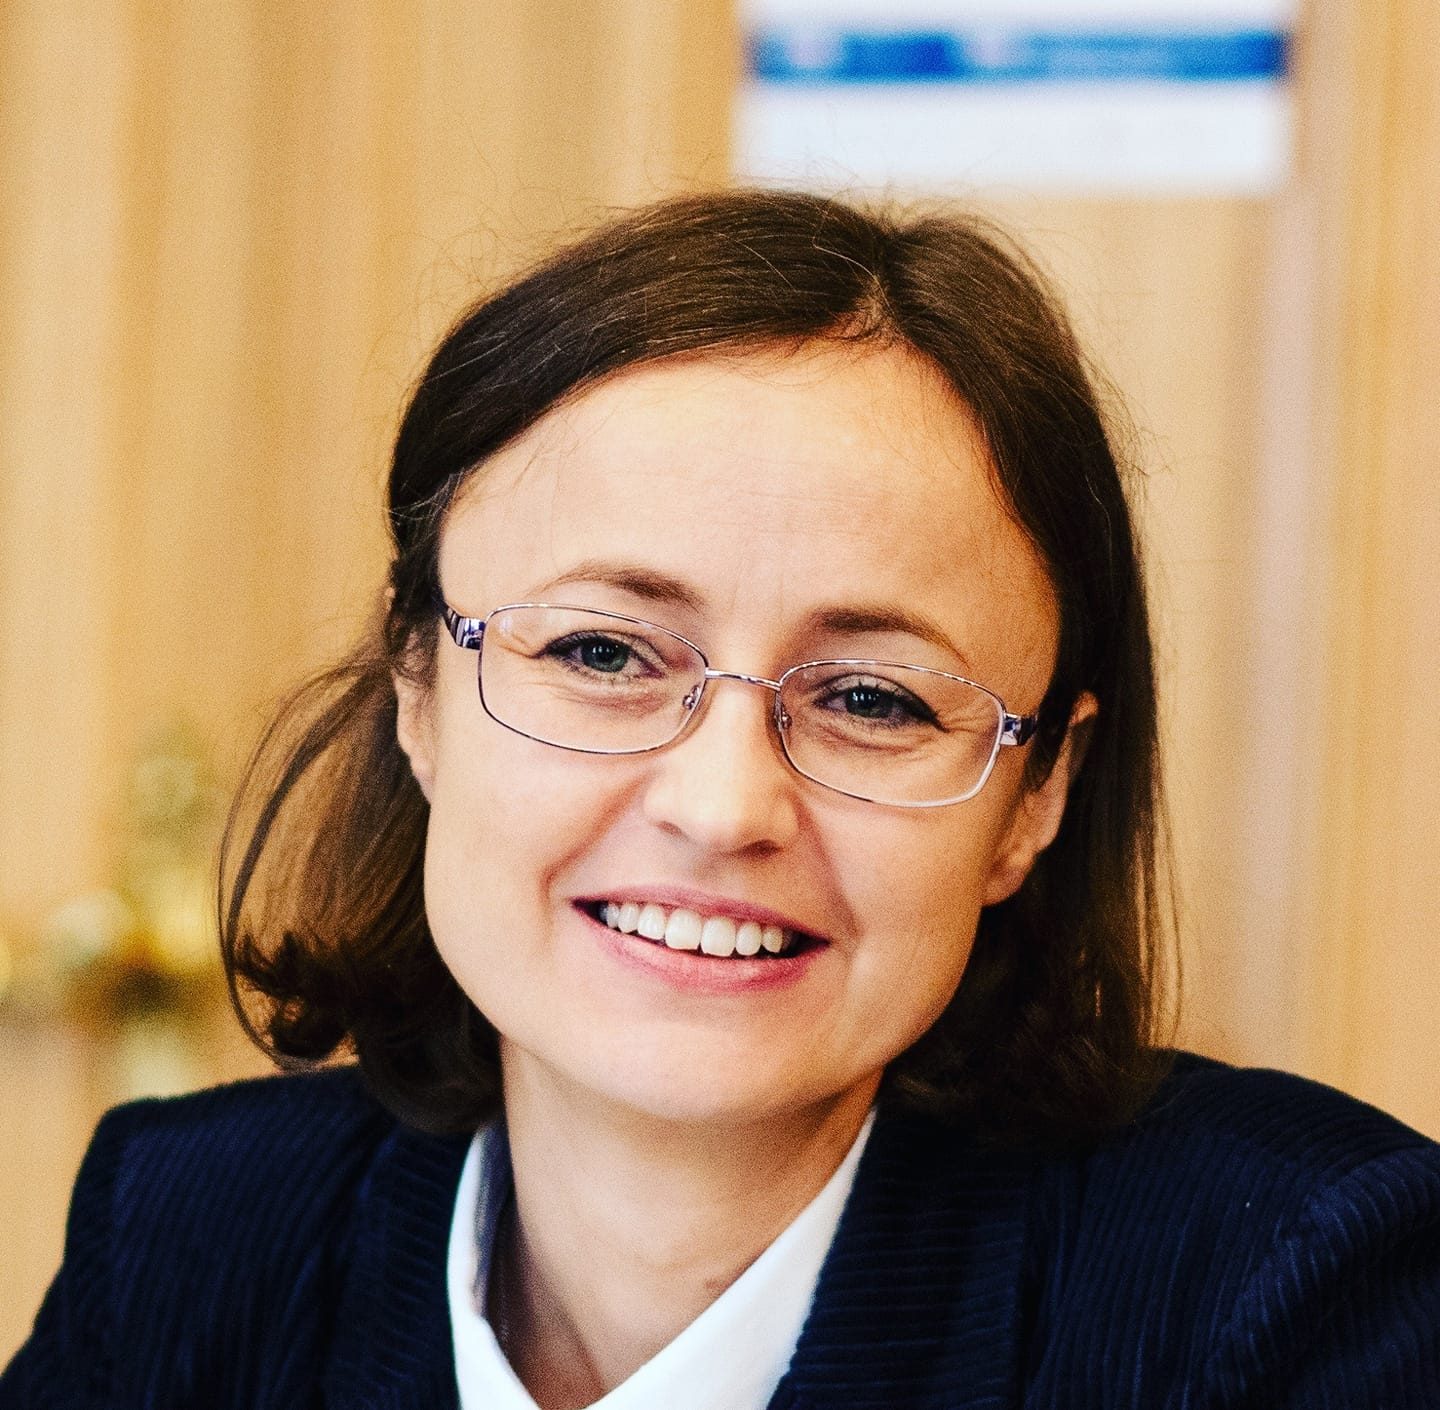 Professor Katarzyna Kopecka-Piech